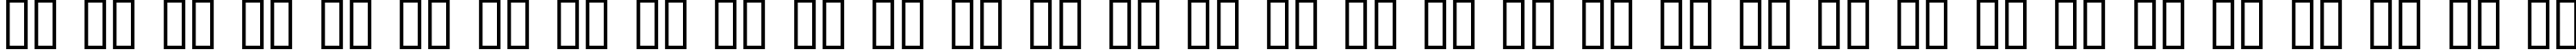 Пример написания русского алфавита шрифтом Prospect